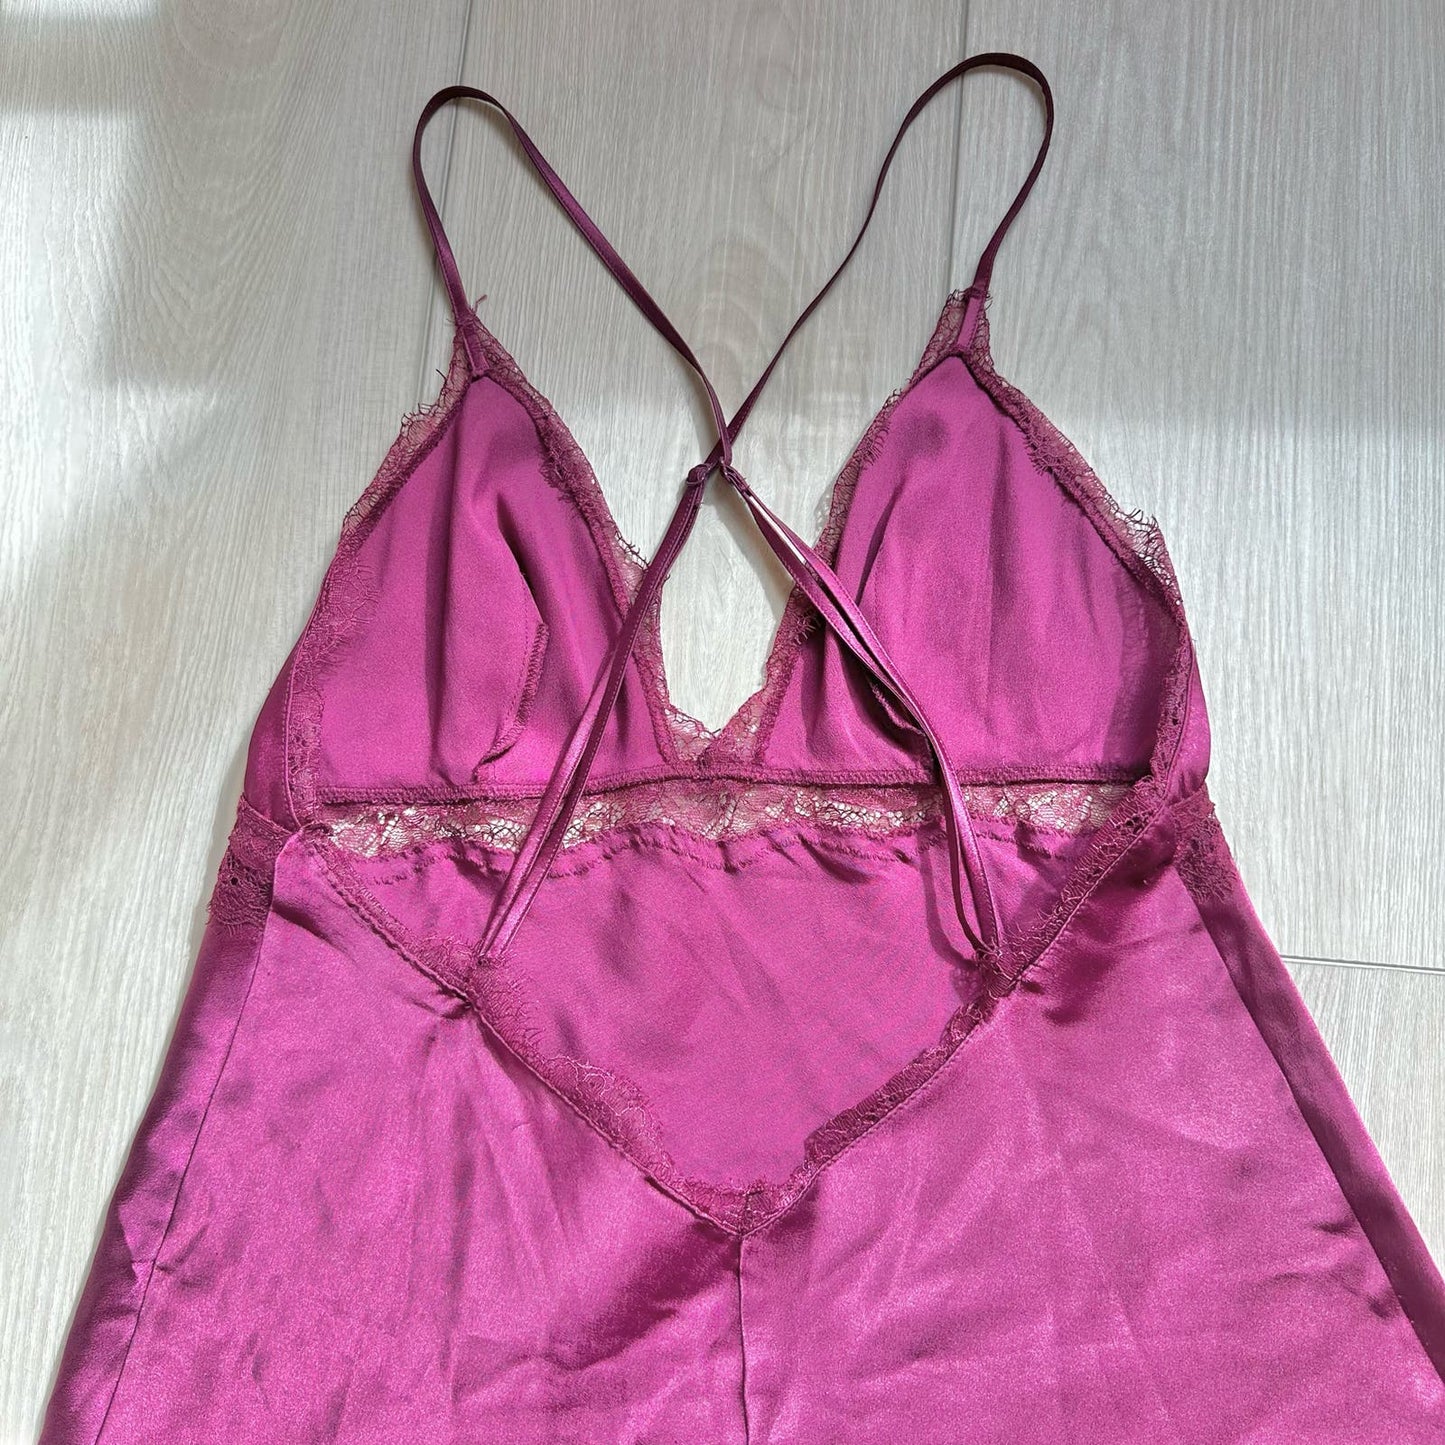 Victoria's Secret purple satin lace lingerie dress